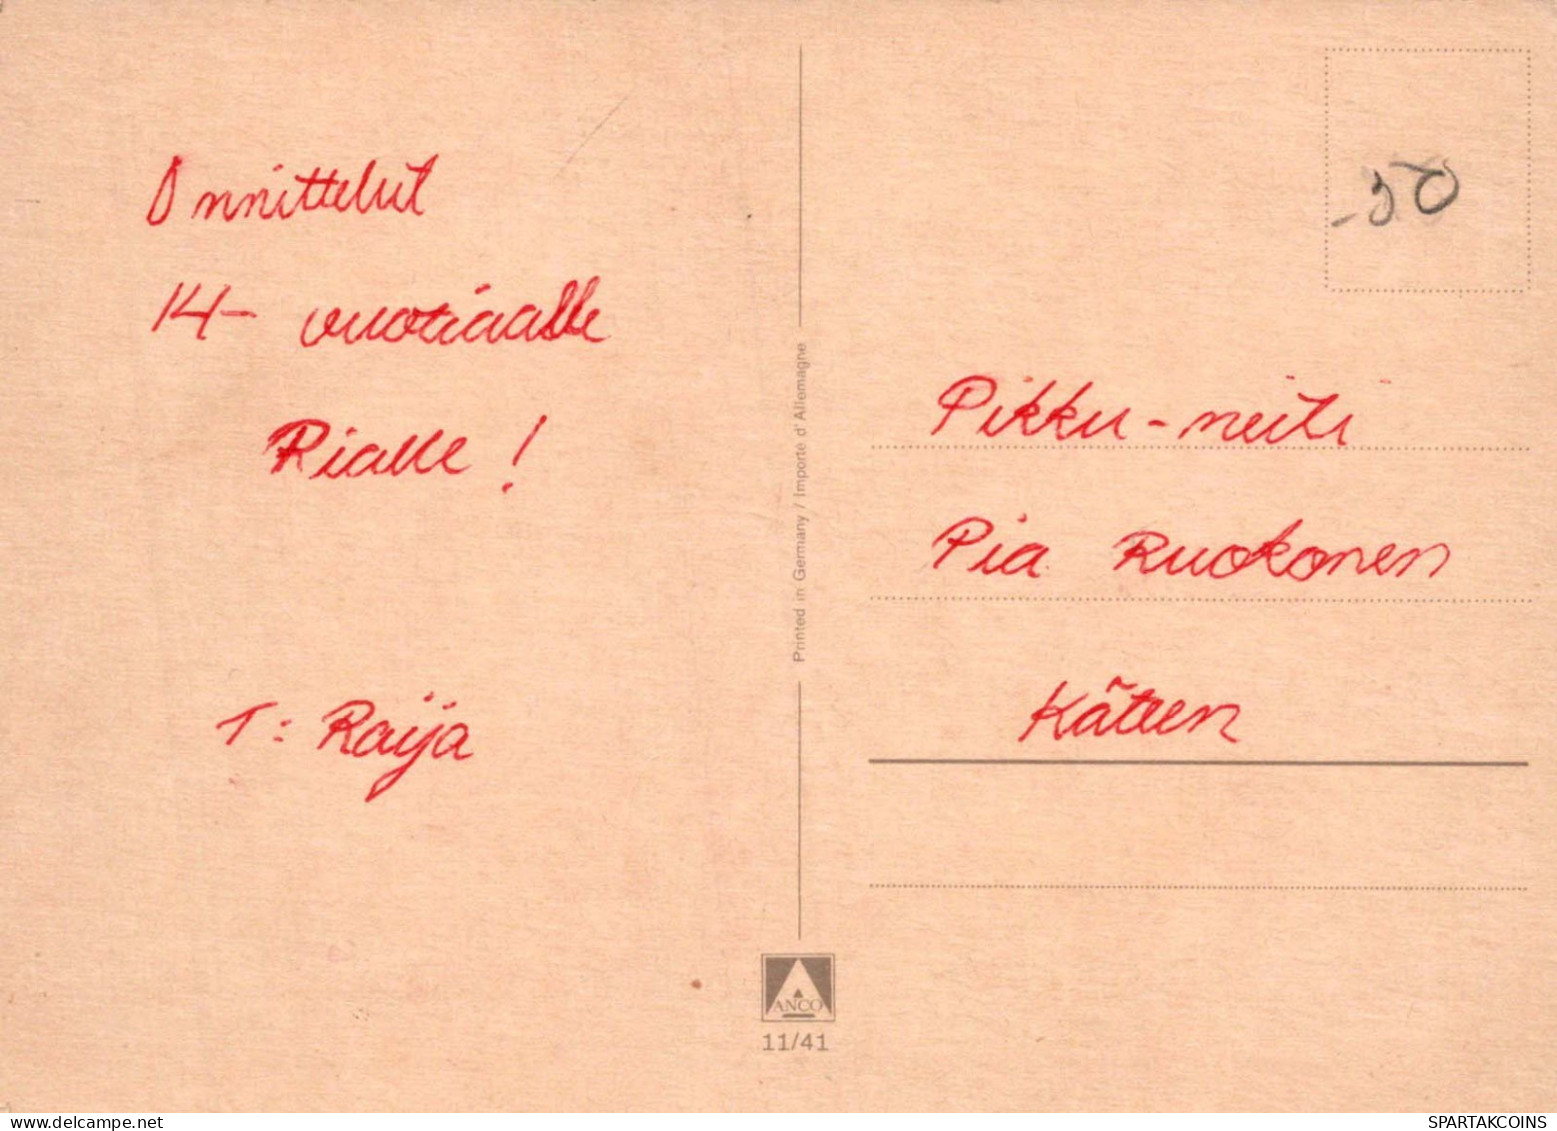 NIÑOS Retrato Vintage Tarjeta Postal CPSM #PBV081.ES - Retratos